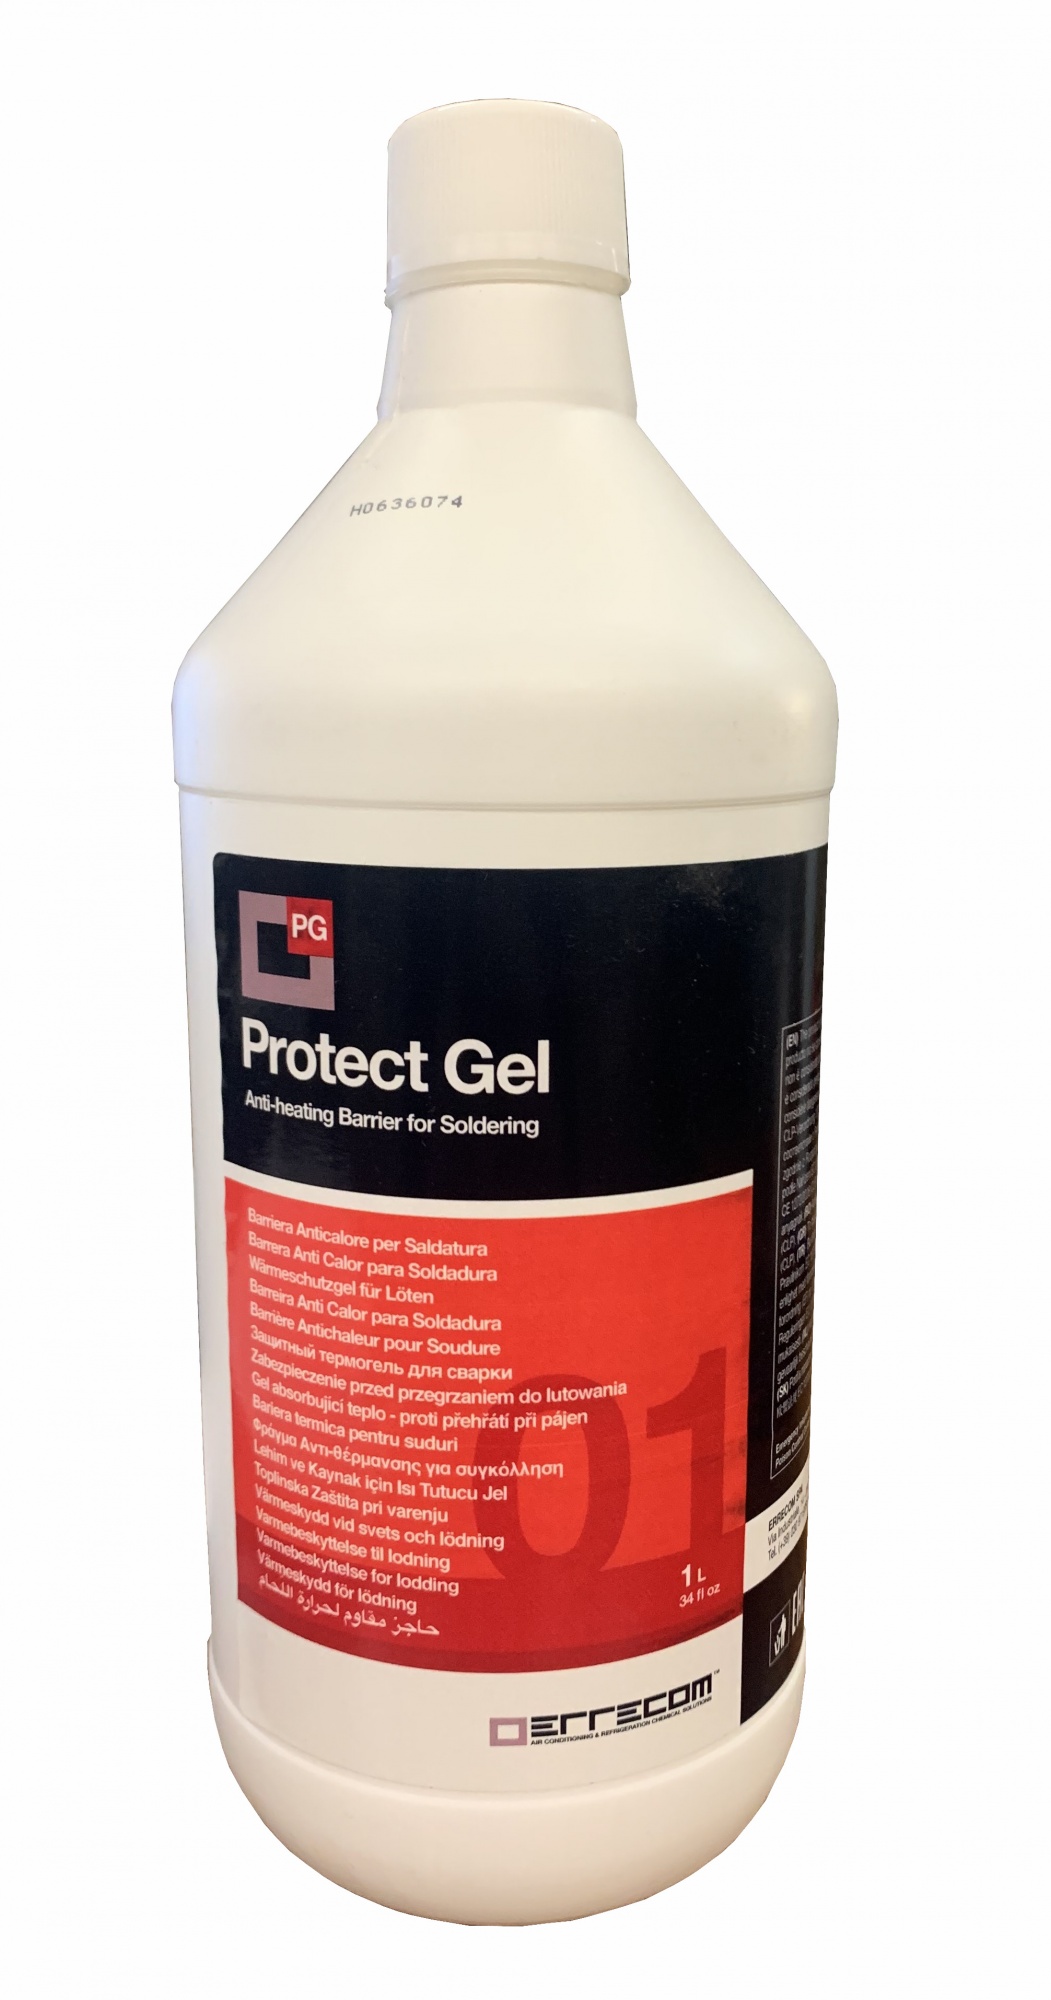 500 gel. Термогель защитный для сварки 1л protect Gel Errecom tr1141.k.01. Термогель для сварки protect Gel. Термогель для сварки от перегрева. Гель Протект плюс.